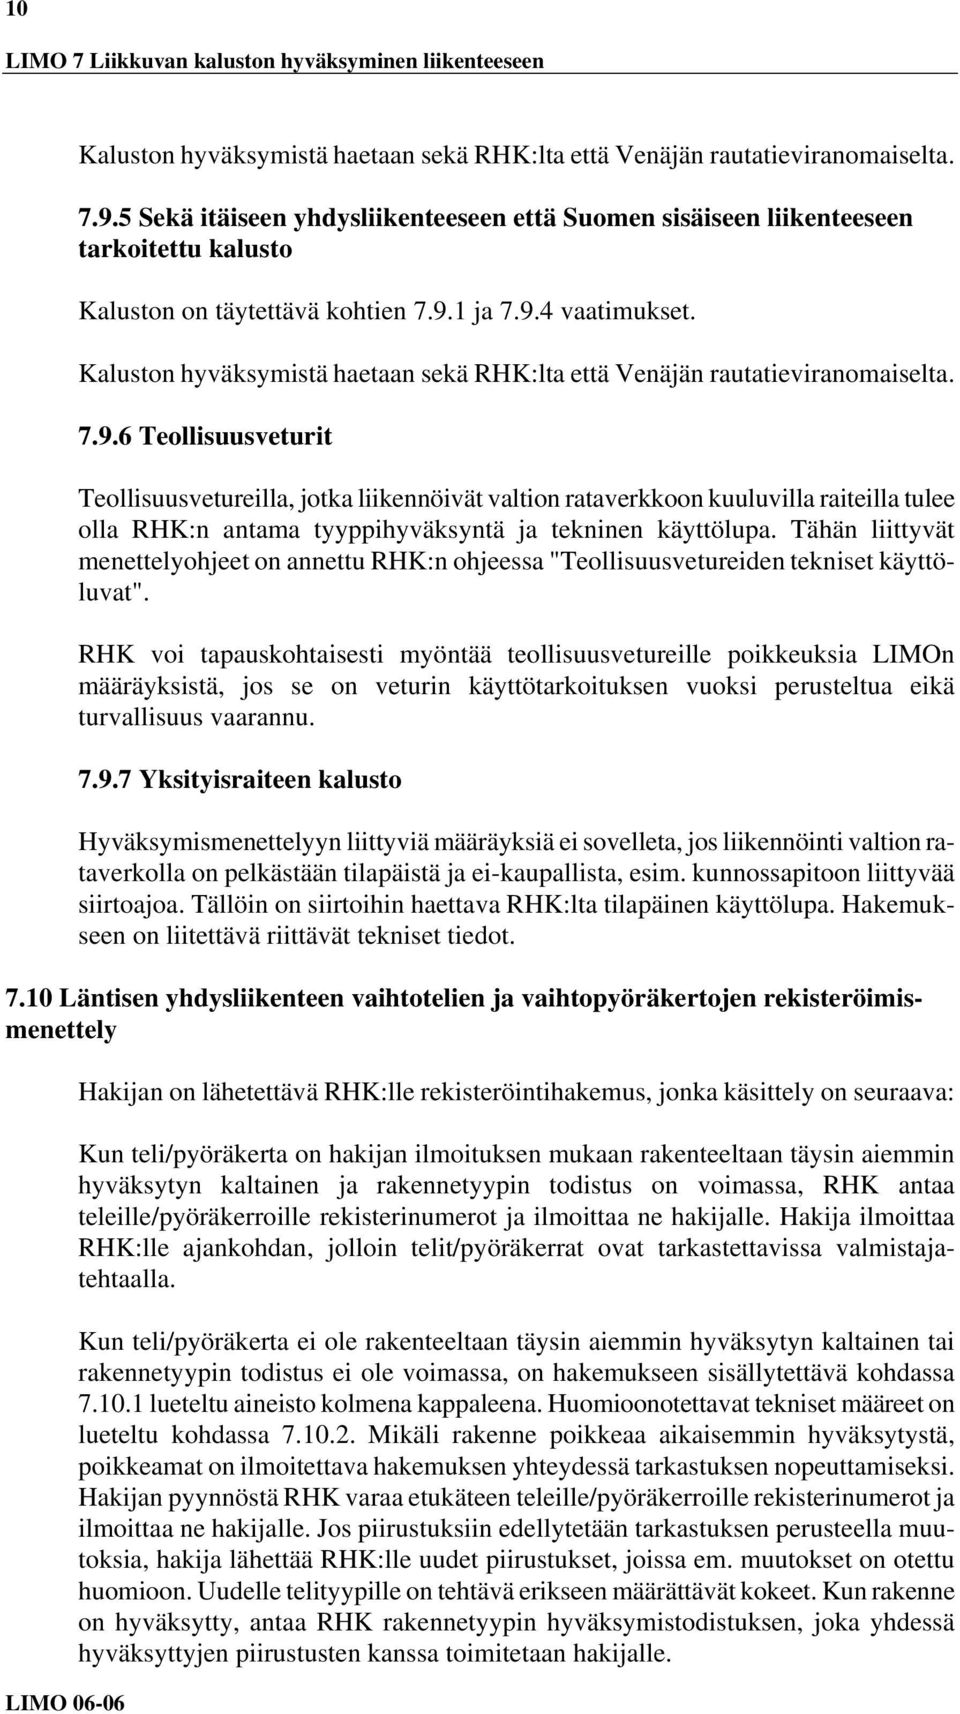 Kaluston hyväksymistä haetaan sekä RHK:lta että Venäjän rautatieviranomaiselta. 7.9.